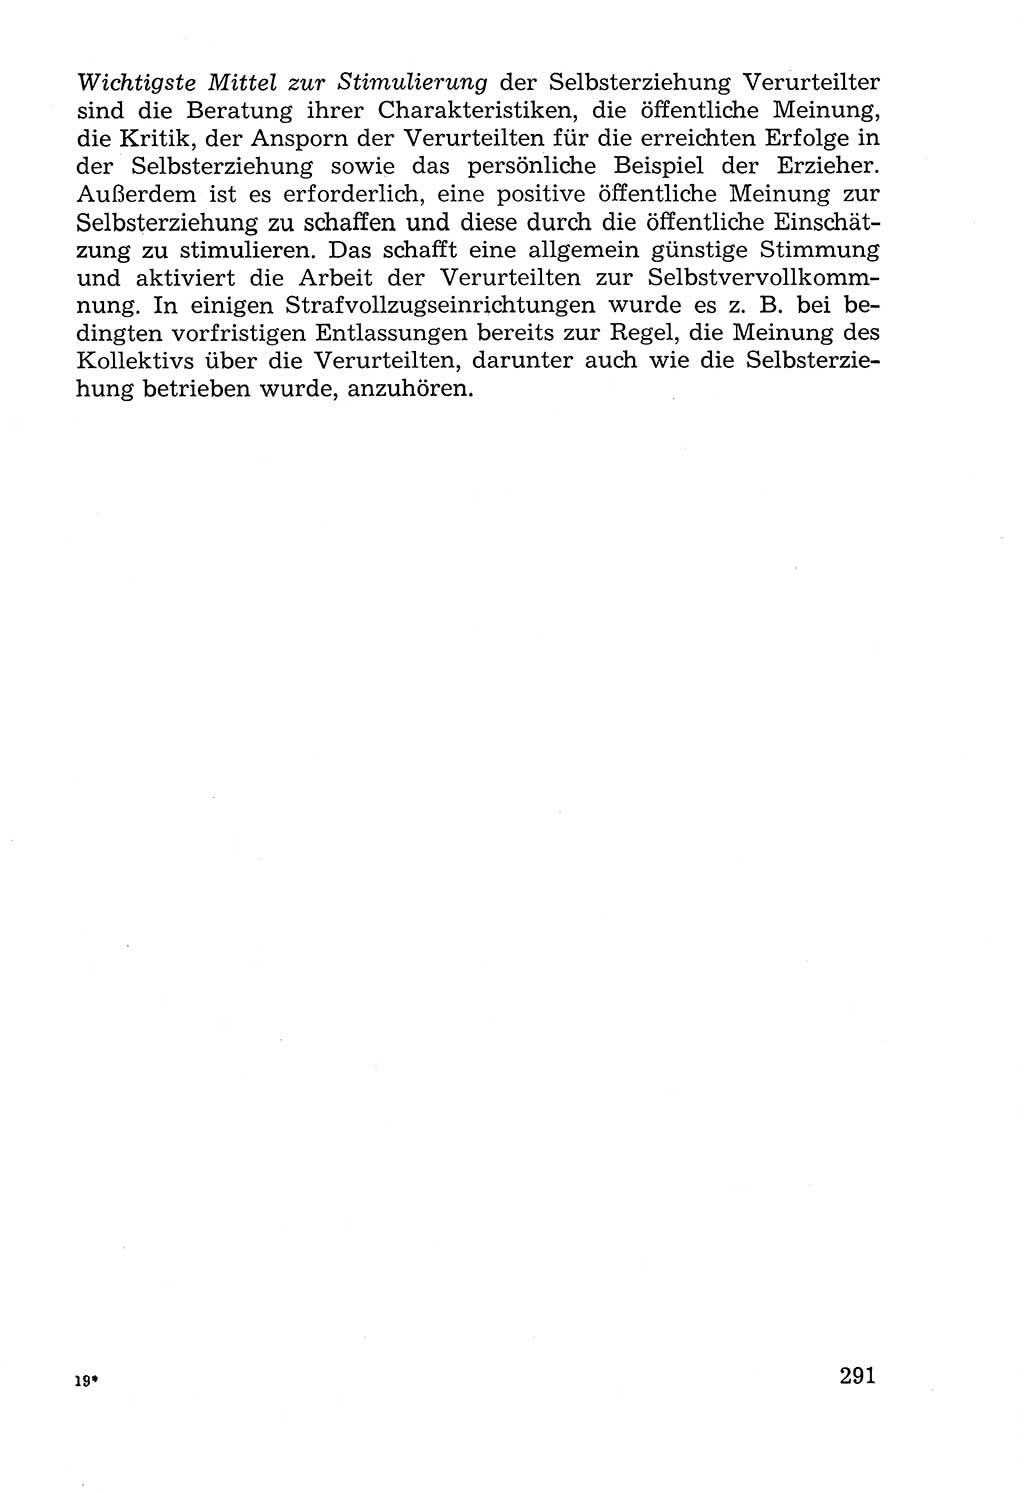 Lehrbuch der StrafvollzugspÃ¤dagogik [Deutsche Demokratische Republik (DDR)] 1969, Seite 291 (Lb. SV-Pd. DDR 1969, S. 291)